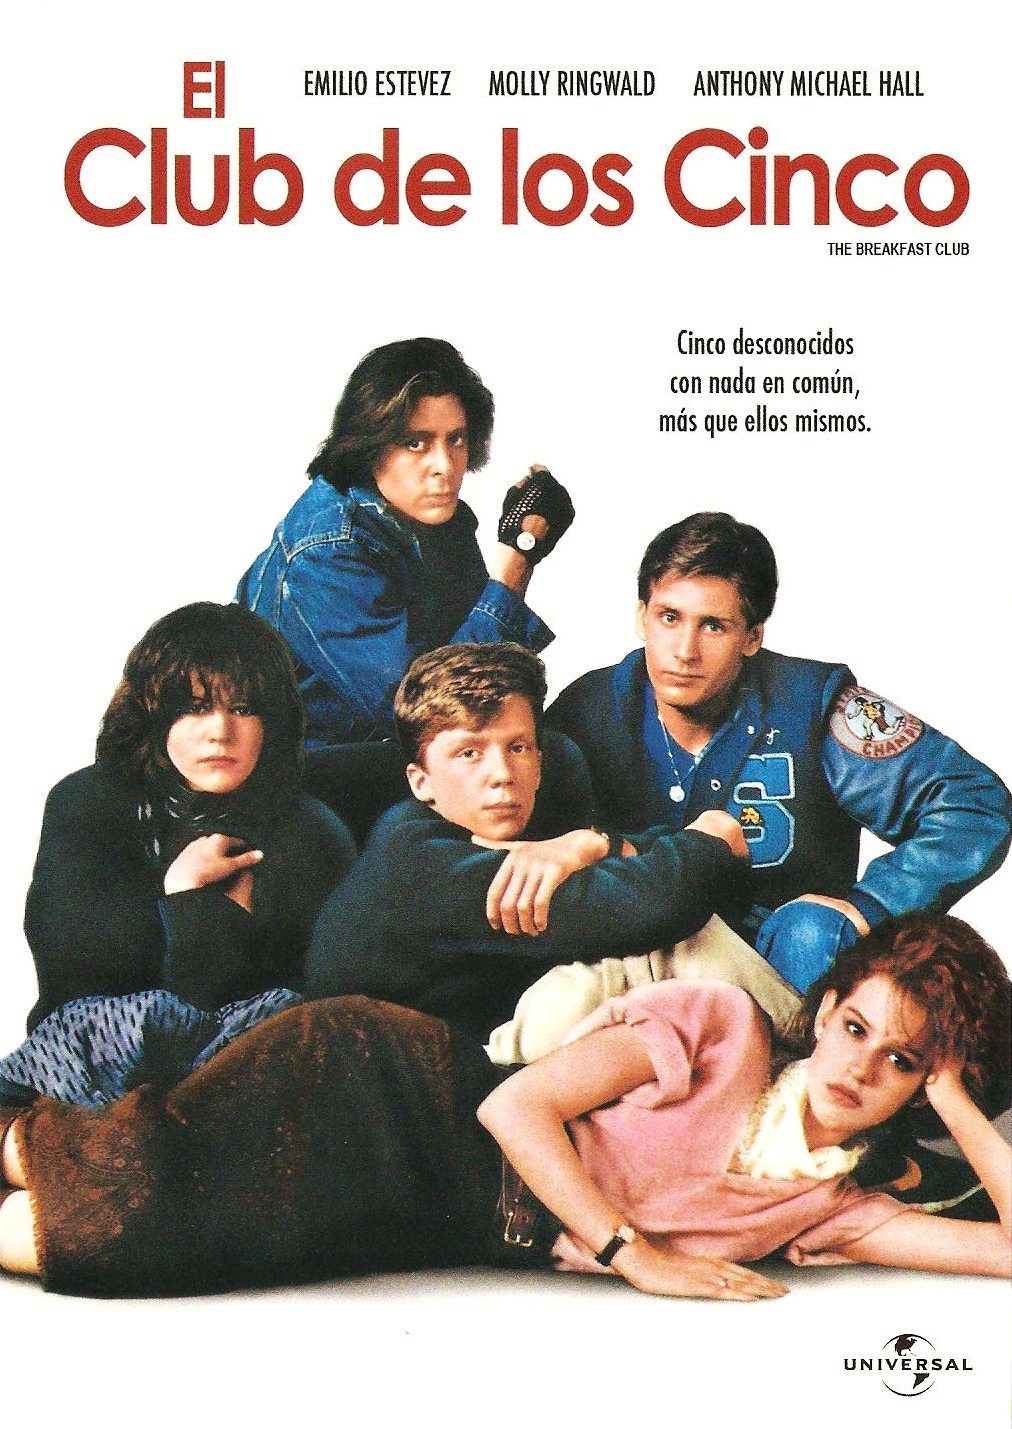 Cómo luce hoy el elenco de la película “El Club de los 5”, 30 años después?  - Guioteca